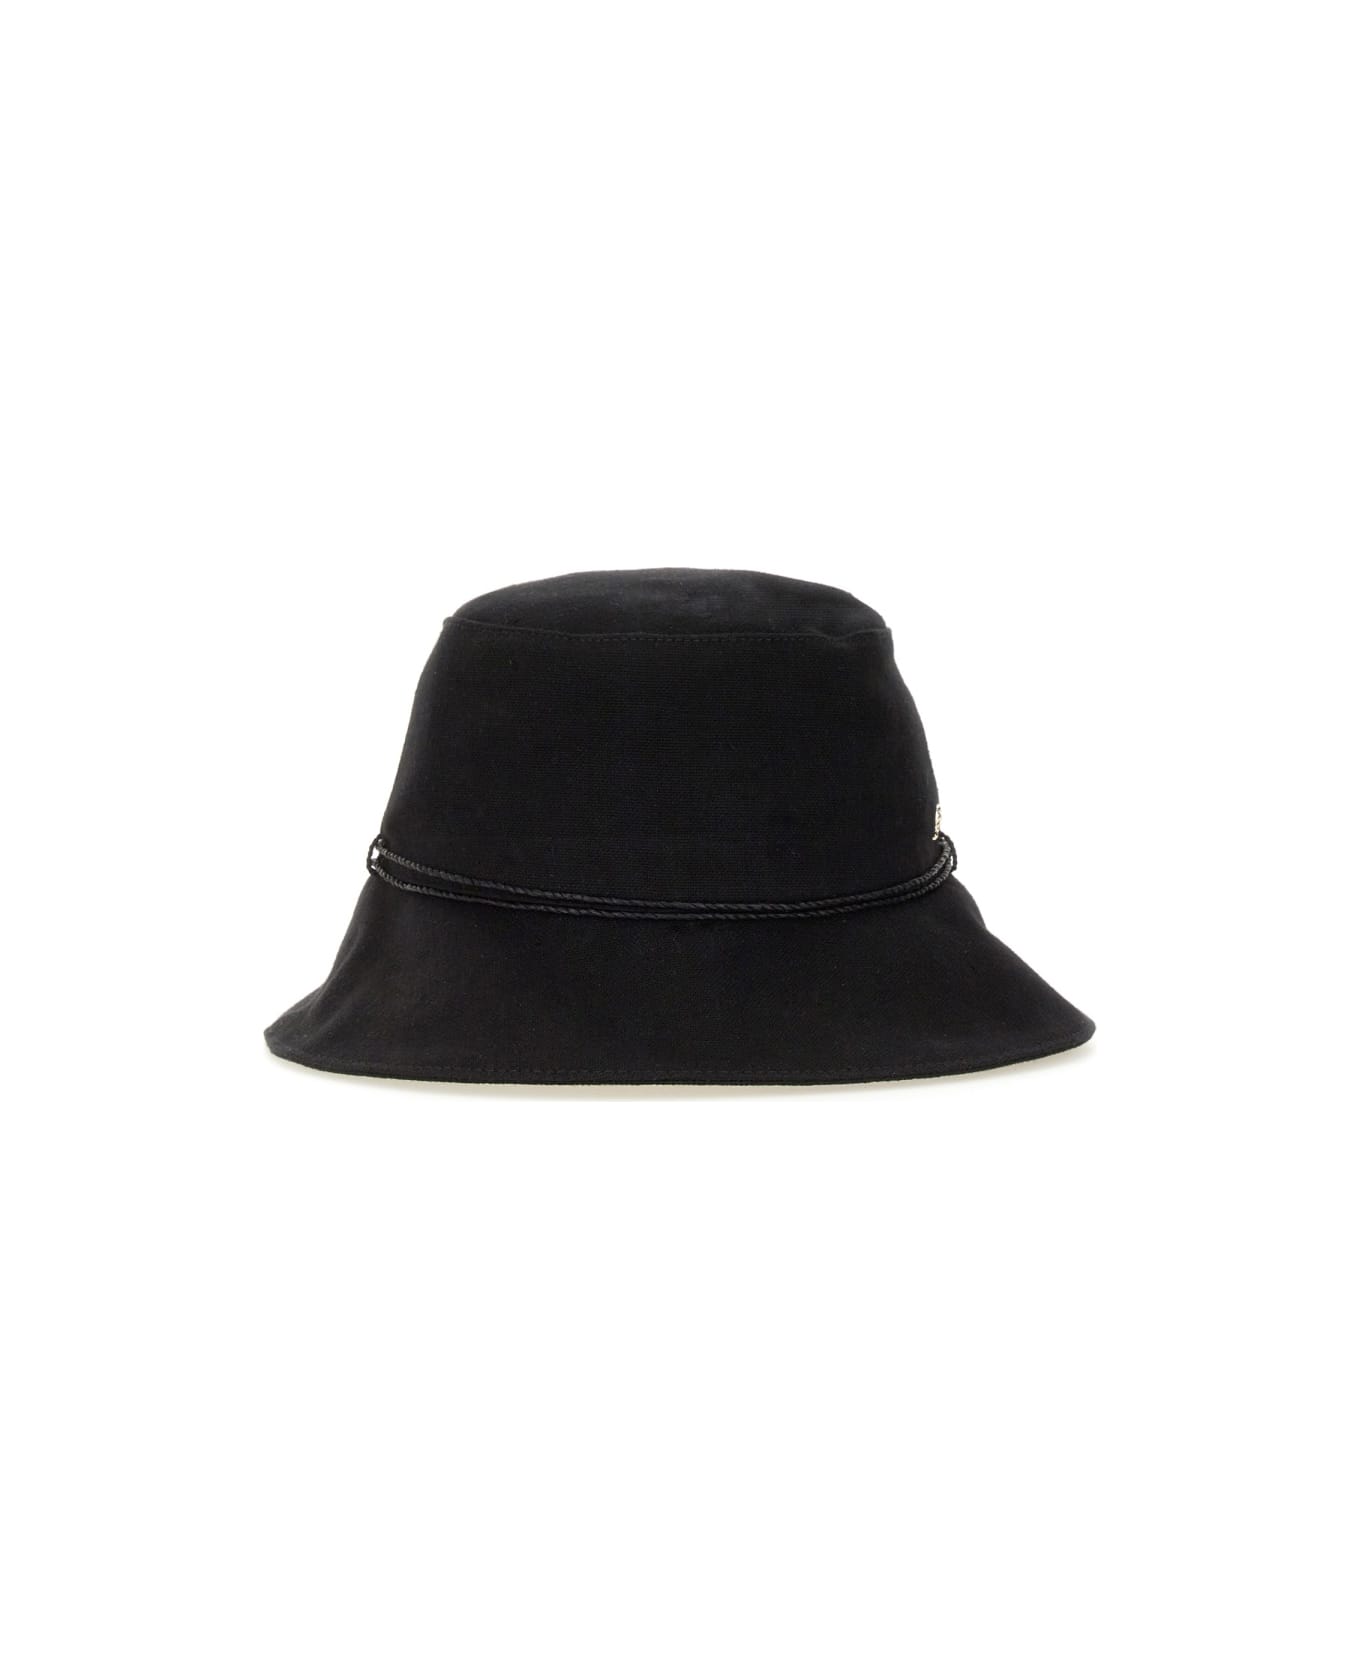 Helen Kaminski Hat "sundar" - BLACK 帽子